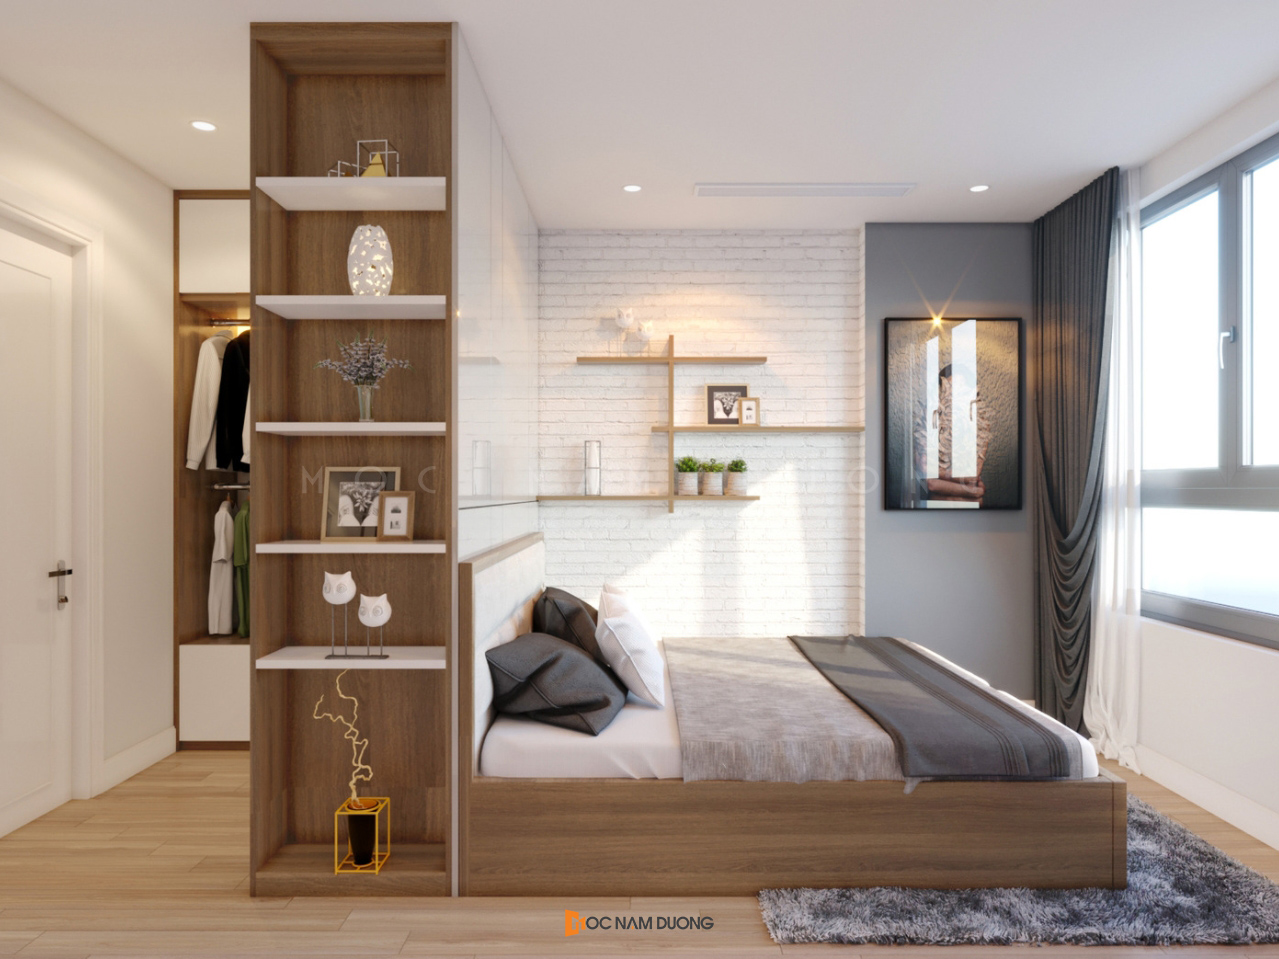 Thiết kế tủ quần áo kết hợp giường ngủ đồng bộ chất liệu gỗ công nghiệp